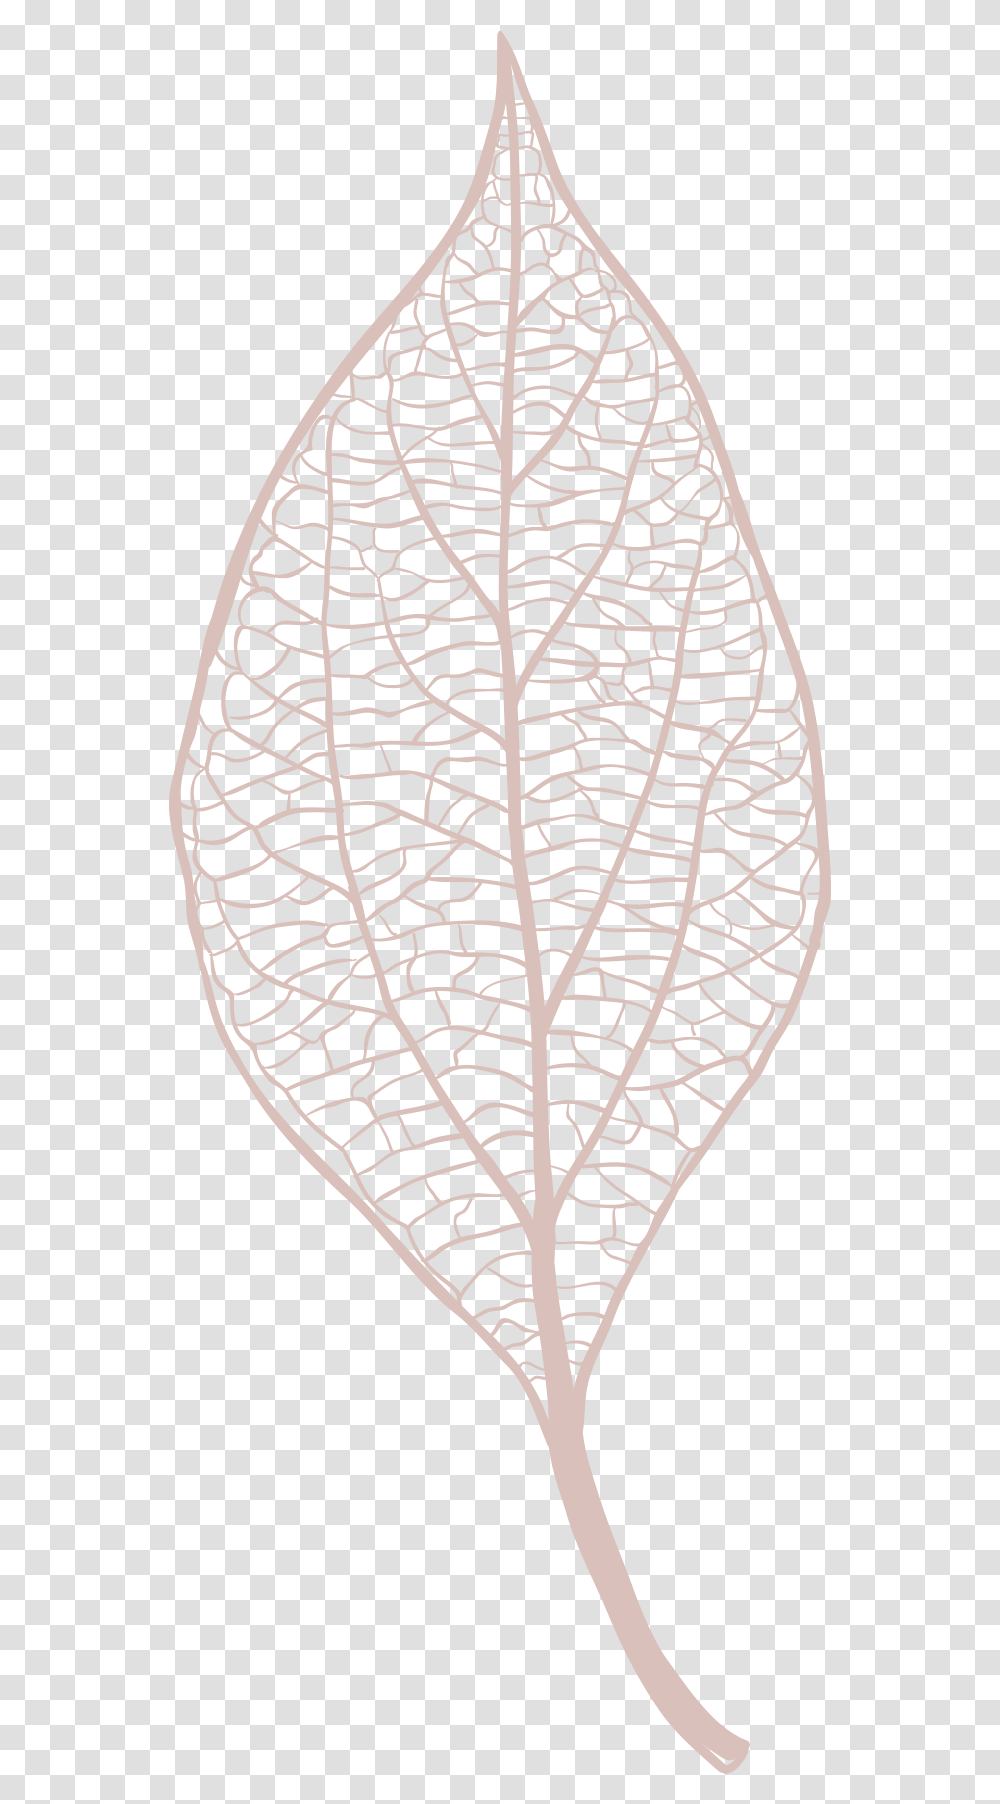 Illustration Leaf Vector, Veins, Plant, Stencil, Spider Web Transparent Png